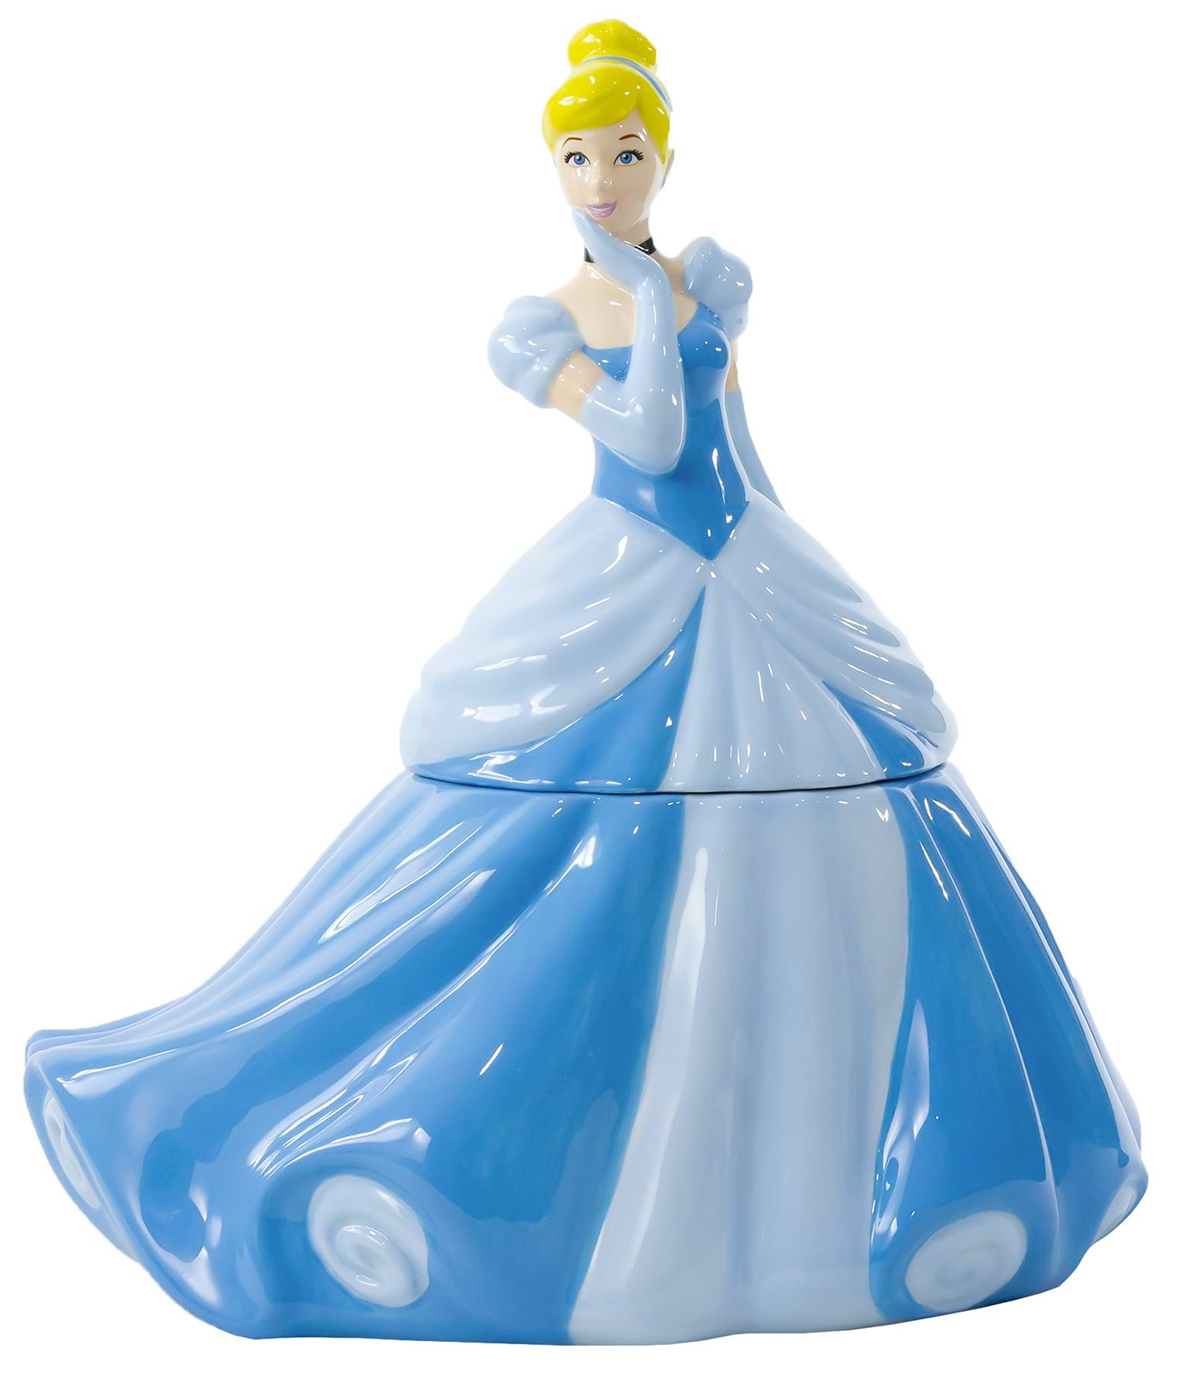 Pote de Cookies Cinderella com Vestido de Gala Azul